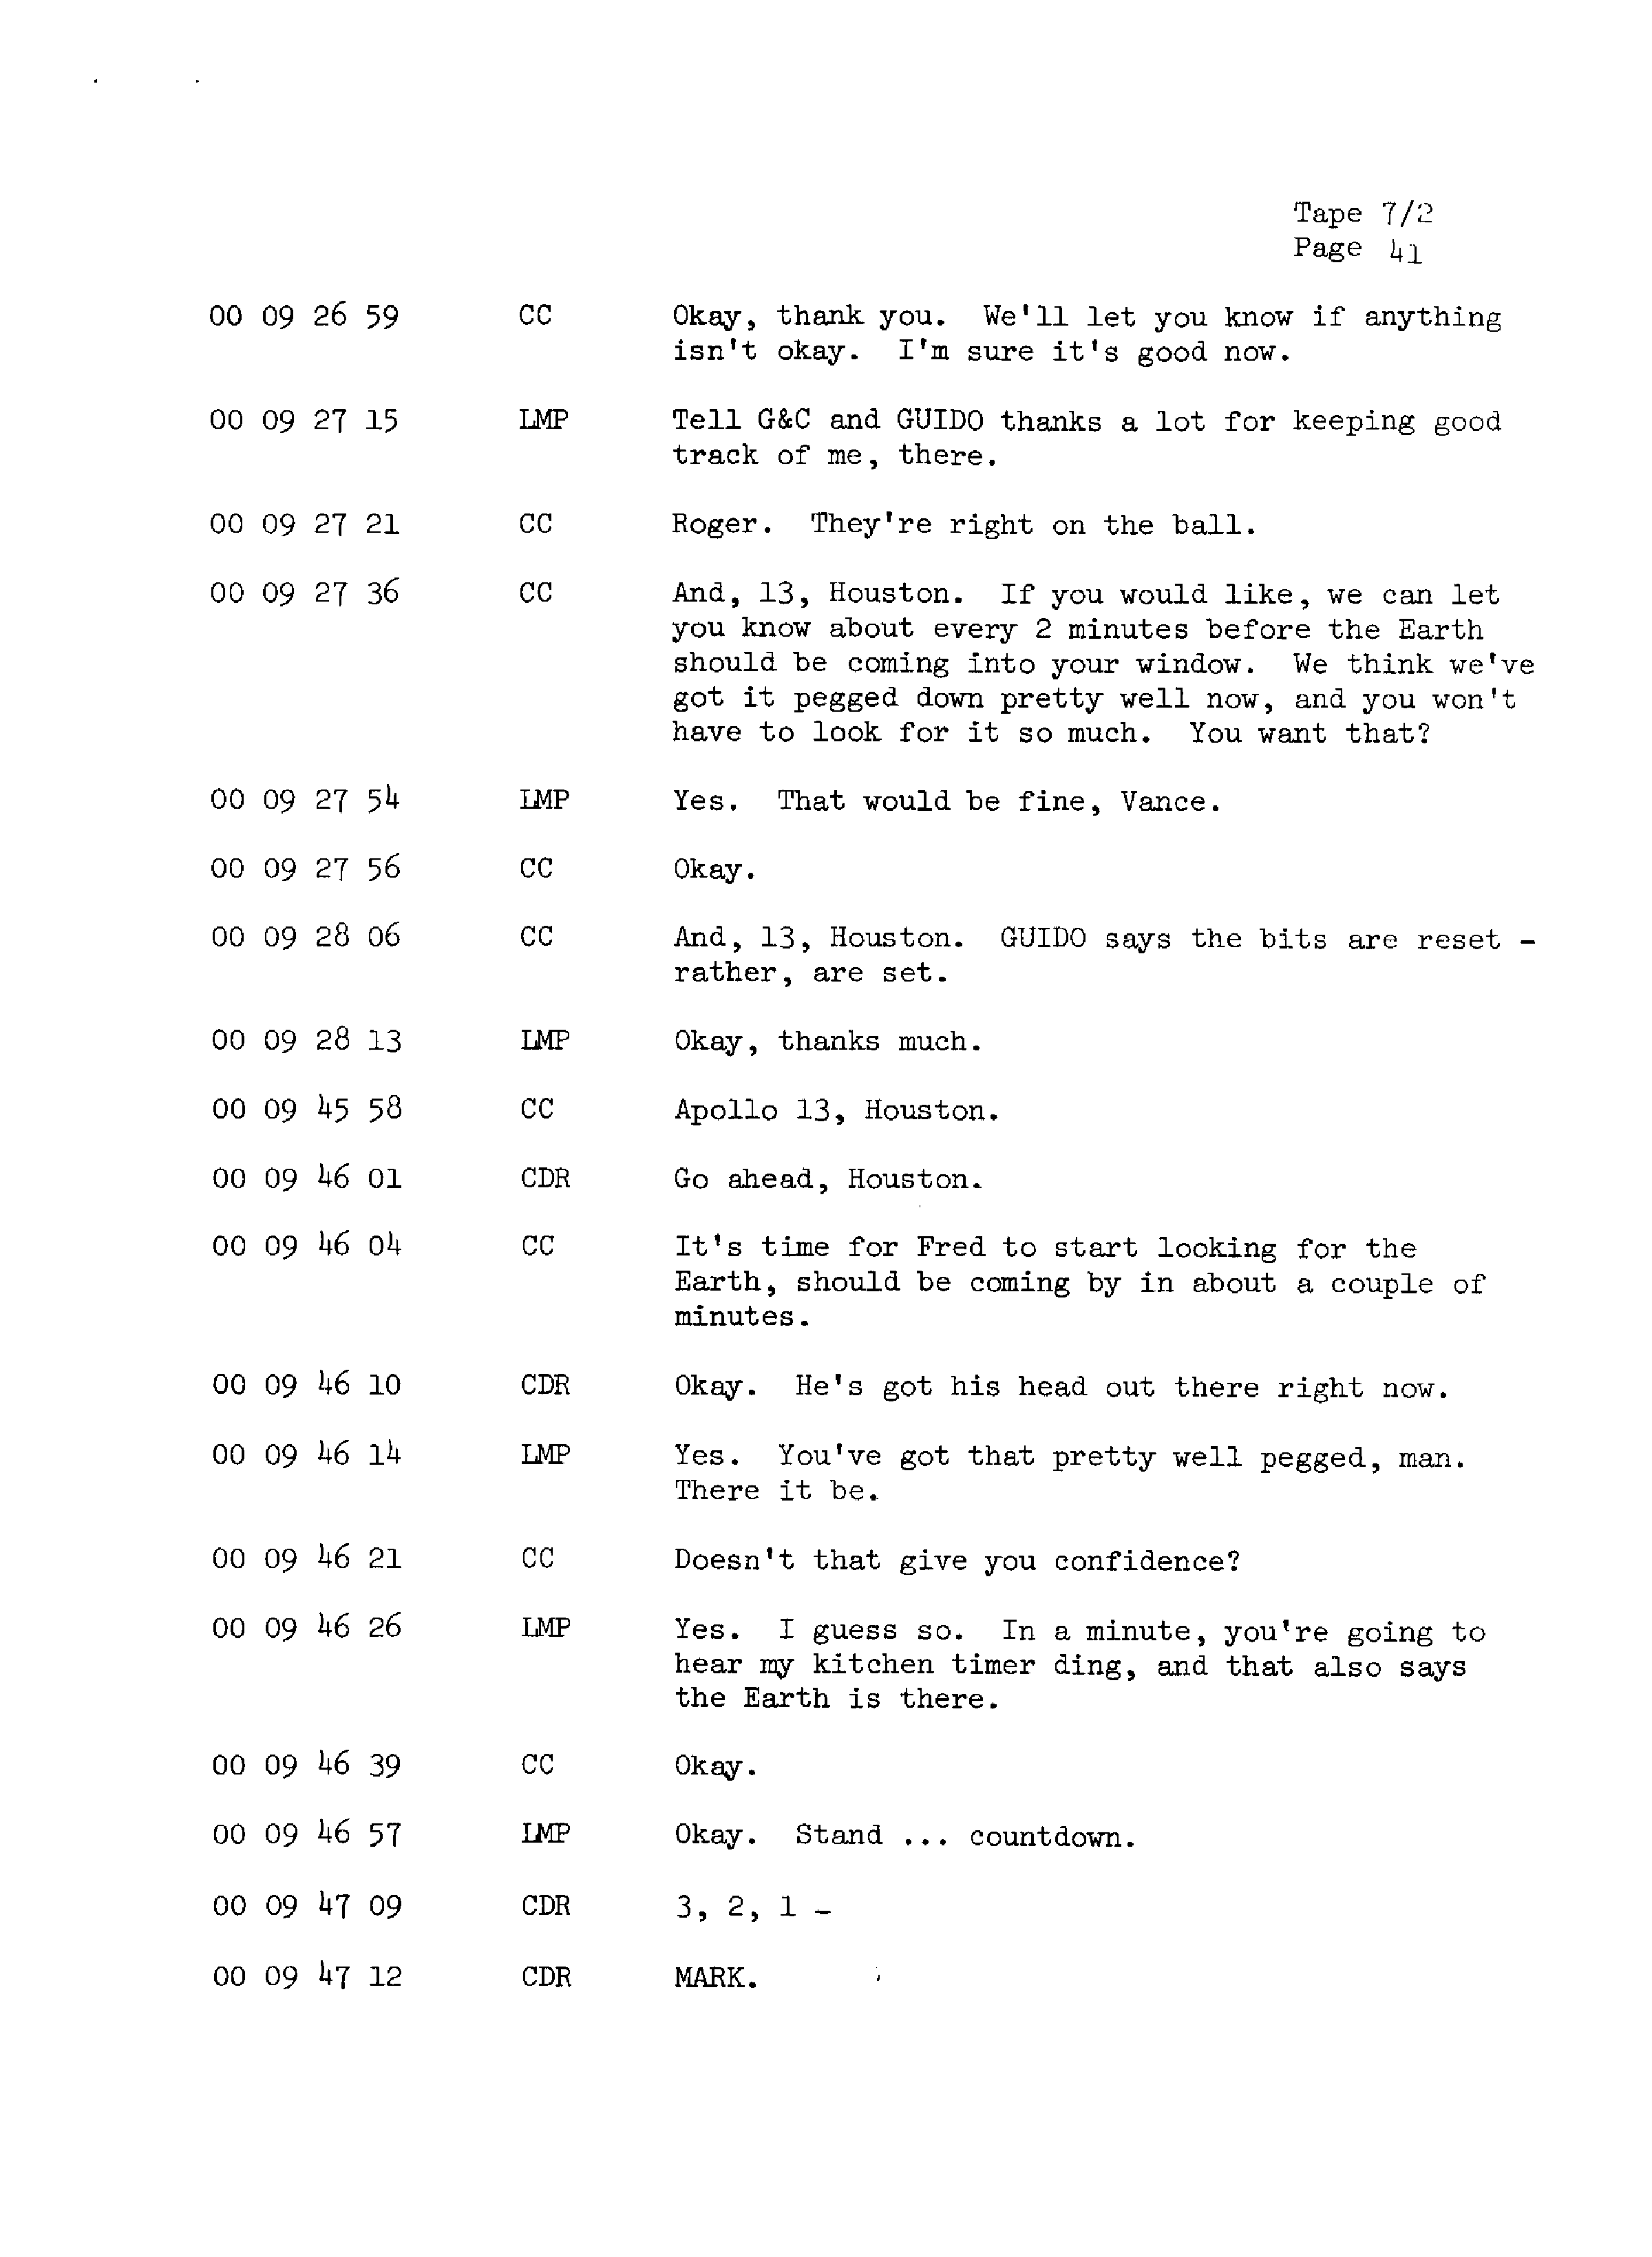 Page 48 of Apollo 13’s original transcript